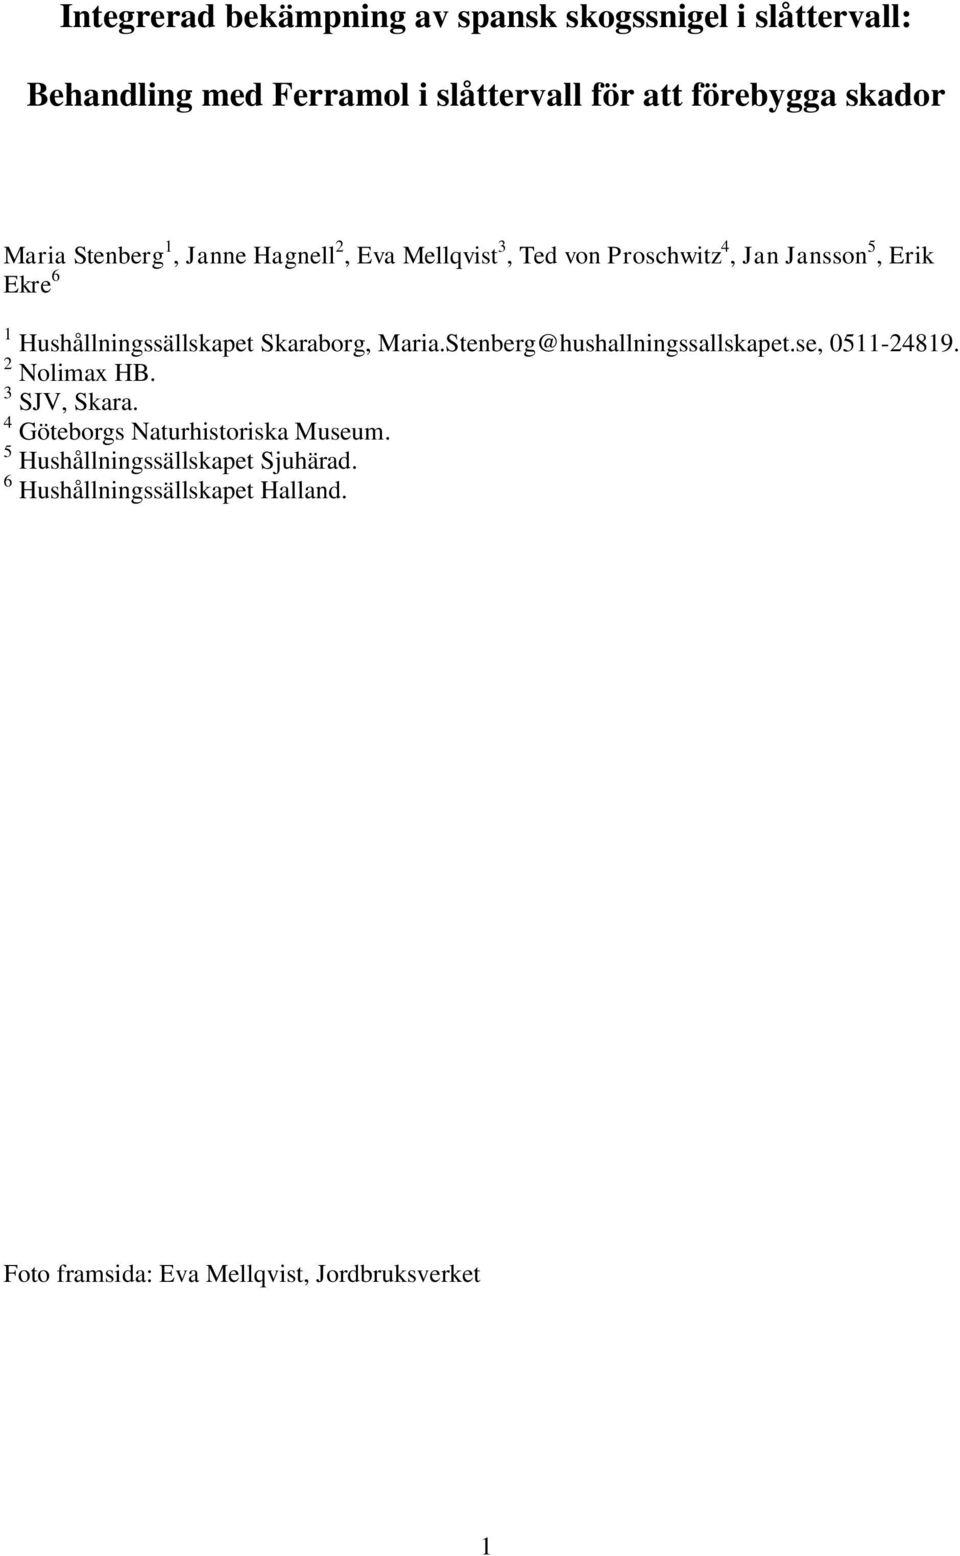 Hushållningssällskapet Skaraborg, Maria.Stenberg@hushallningssallskapet.se, 0511-24819. 2 Nolimax HB. 3 SJV, Skara.